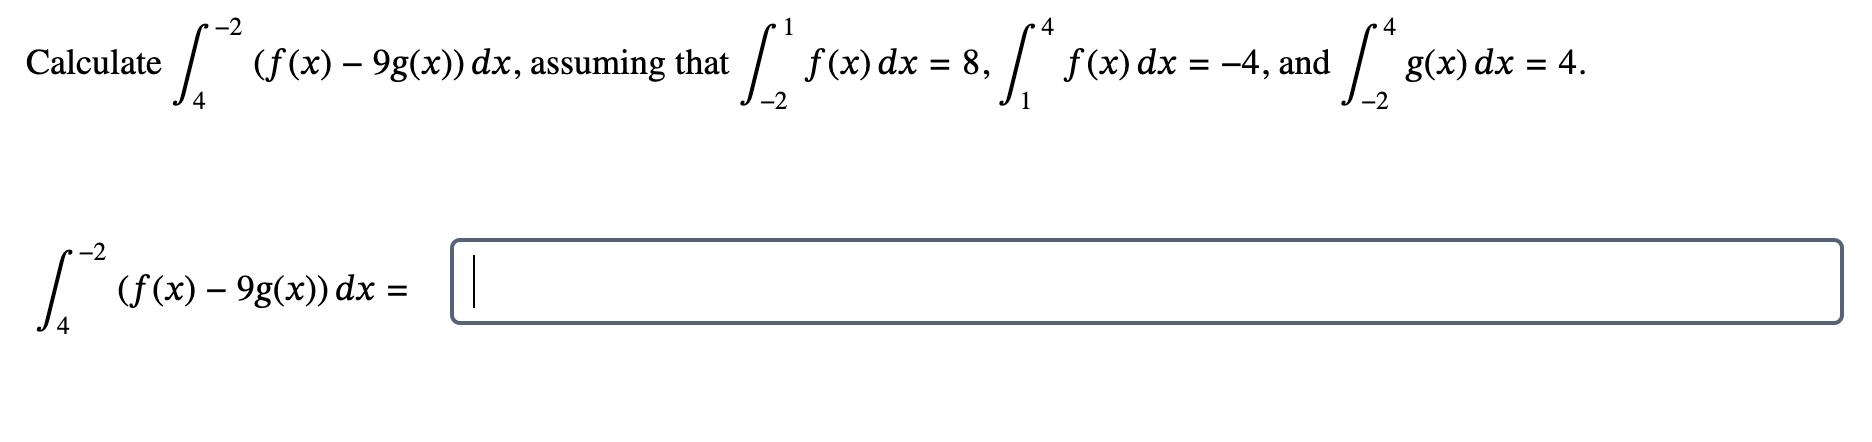 Calculate 4 -2 (f(x) - 9g(x)) dx, assuming that [* = (f(x)  9g(x)) dx 1 4 [  f(x) dx = 8, [* f(x) dx = -4 -2